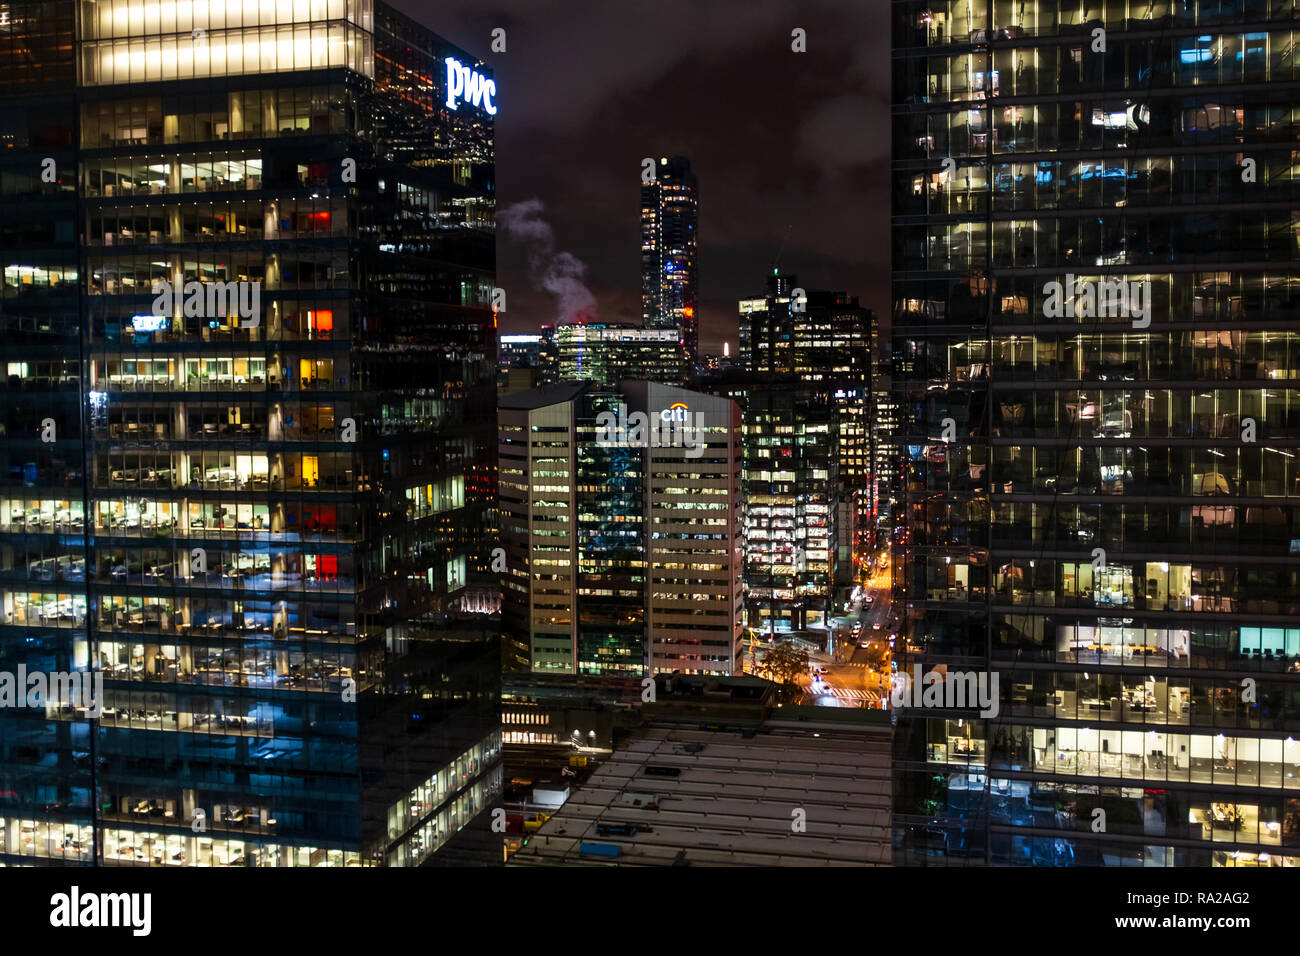 Einen erhöhten Blick auf die Skyline von Toronto Maple Leaf Platz in Toronto, Kanada gesehen. Stockfoto